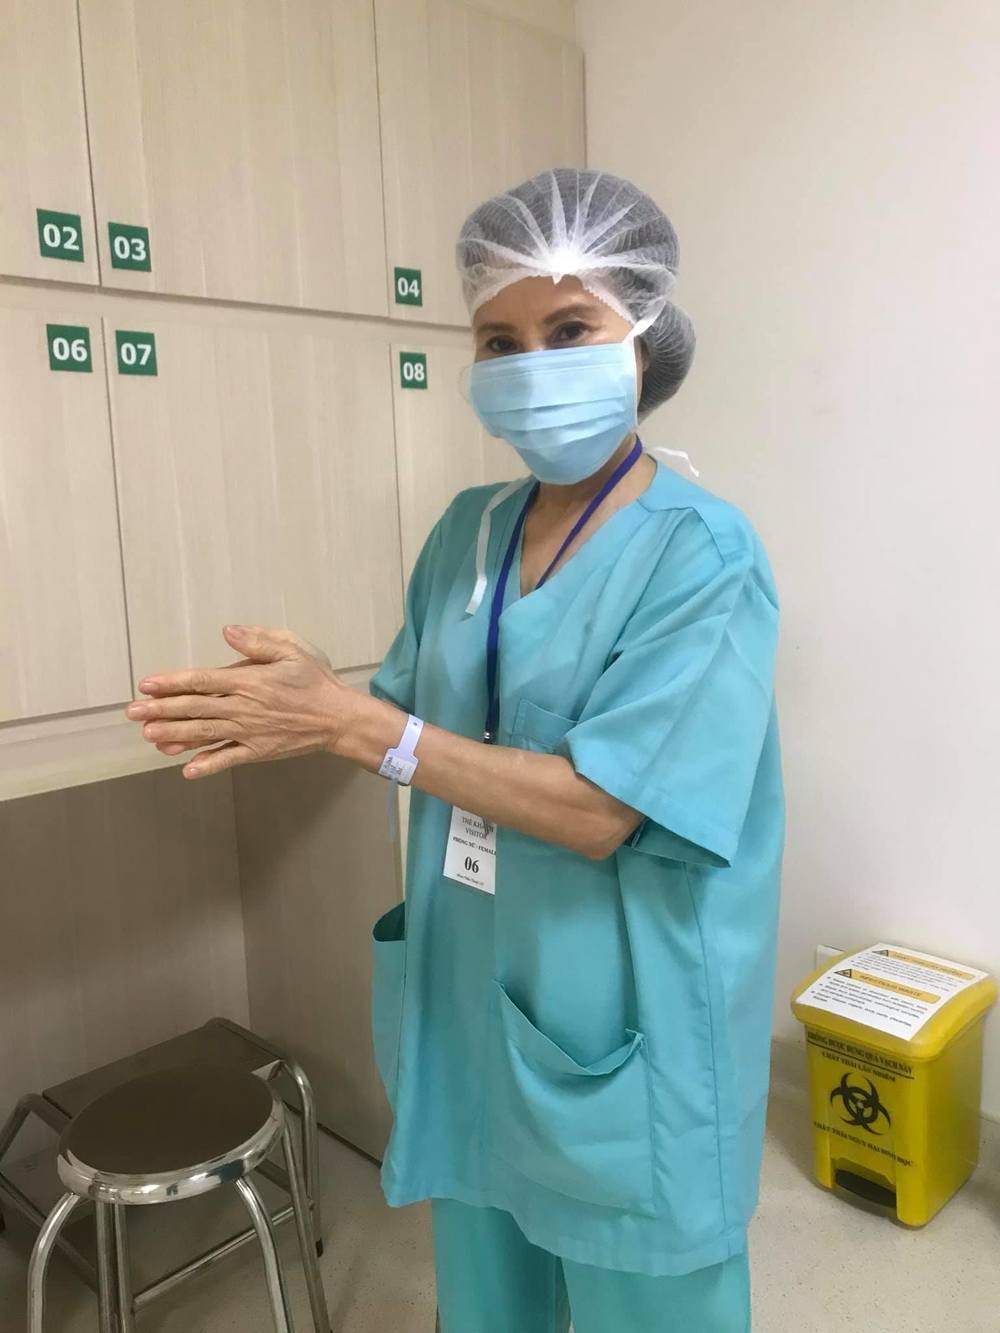 
Cô Ngọc Hương cũng mặc đồ bảo hộ bệnh viện trong lúc xem con sinh nở. (Ảnh: FBNV) - Tin sao Viet - Tin tuc sao Viet - Scandal sao Viet - Tin tuc cua Sao - Tin cua Sao